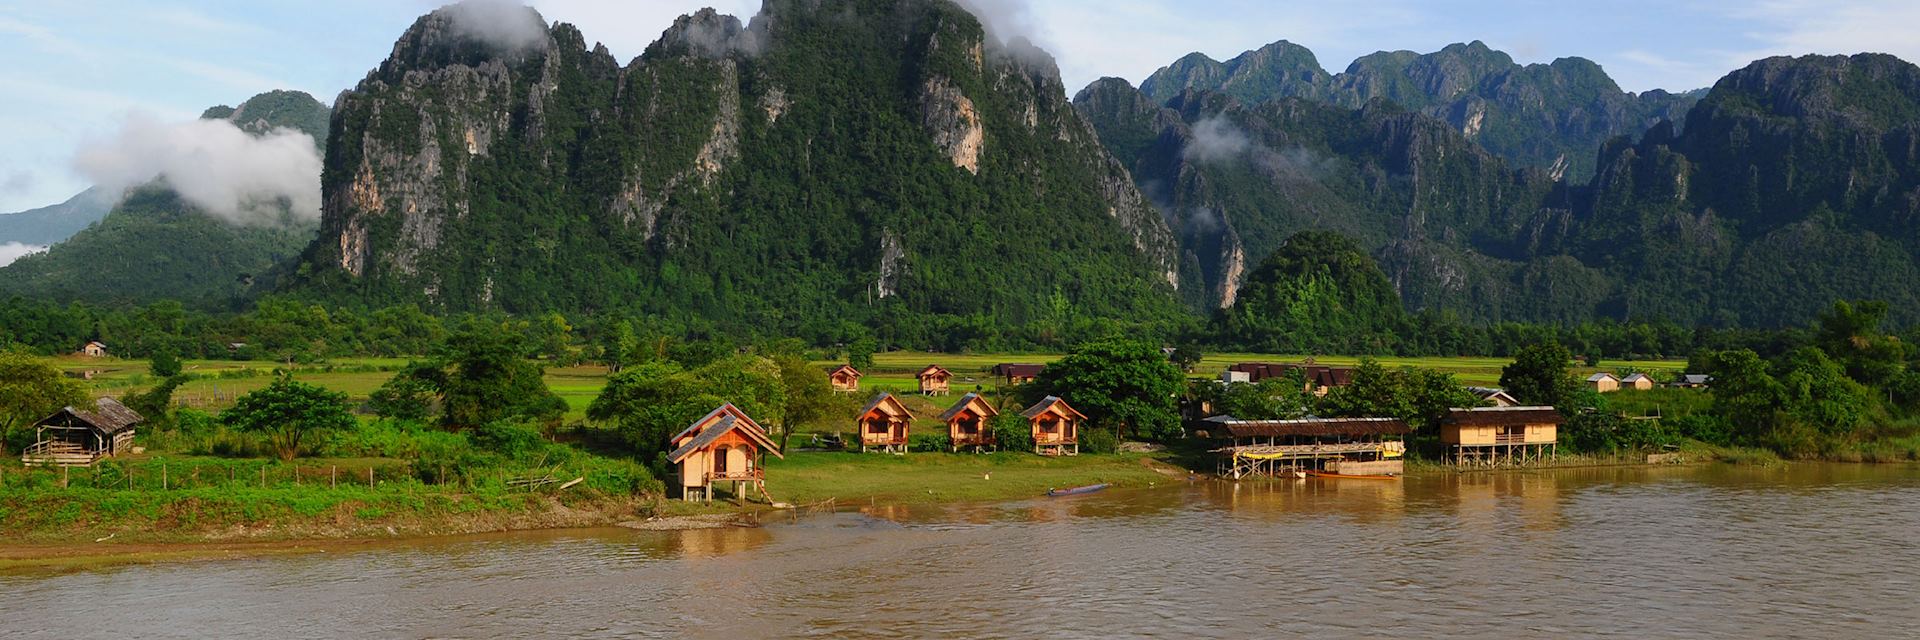 The sleepy riverside town of Vang Vieng